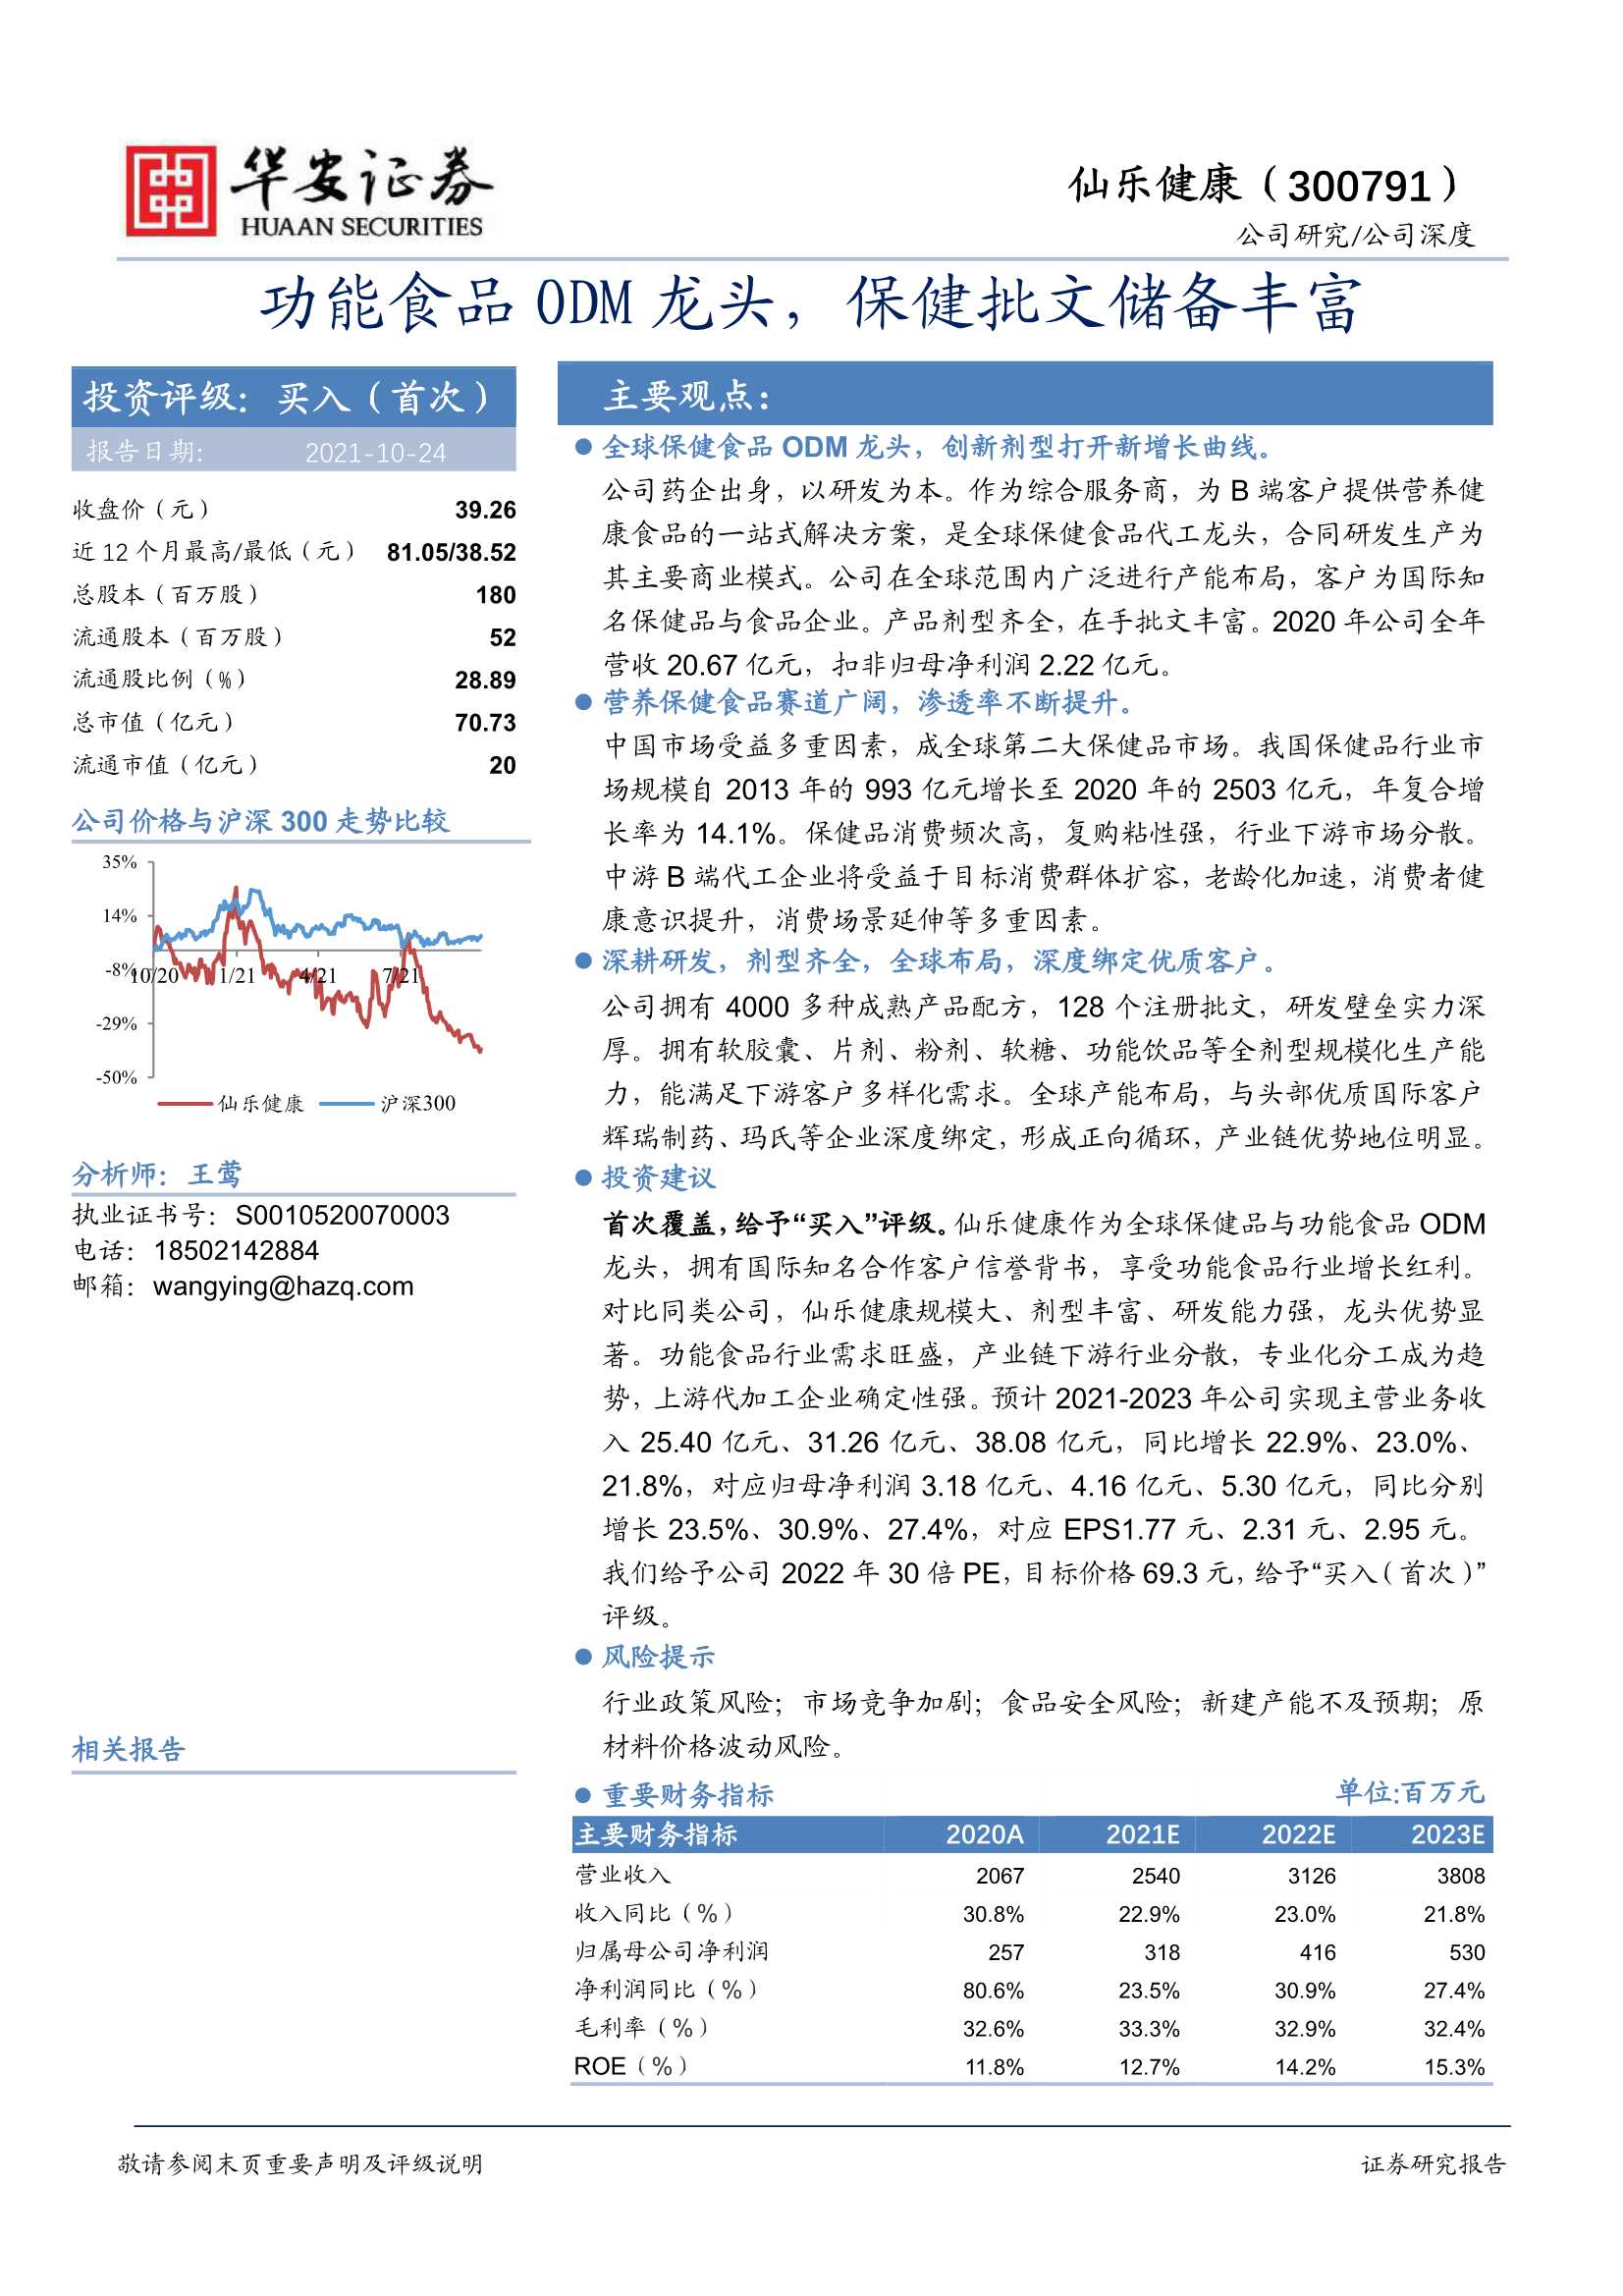 华安证券-仙乐健康-300791-功能食品ODM龙头，保健批文储备丰富-20211024-30页